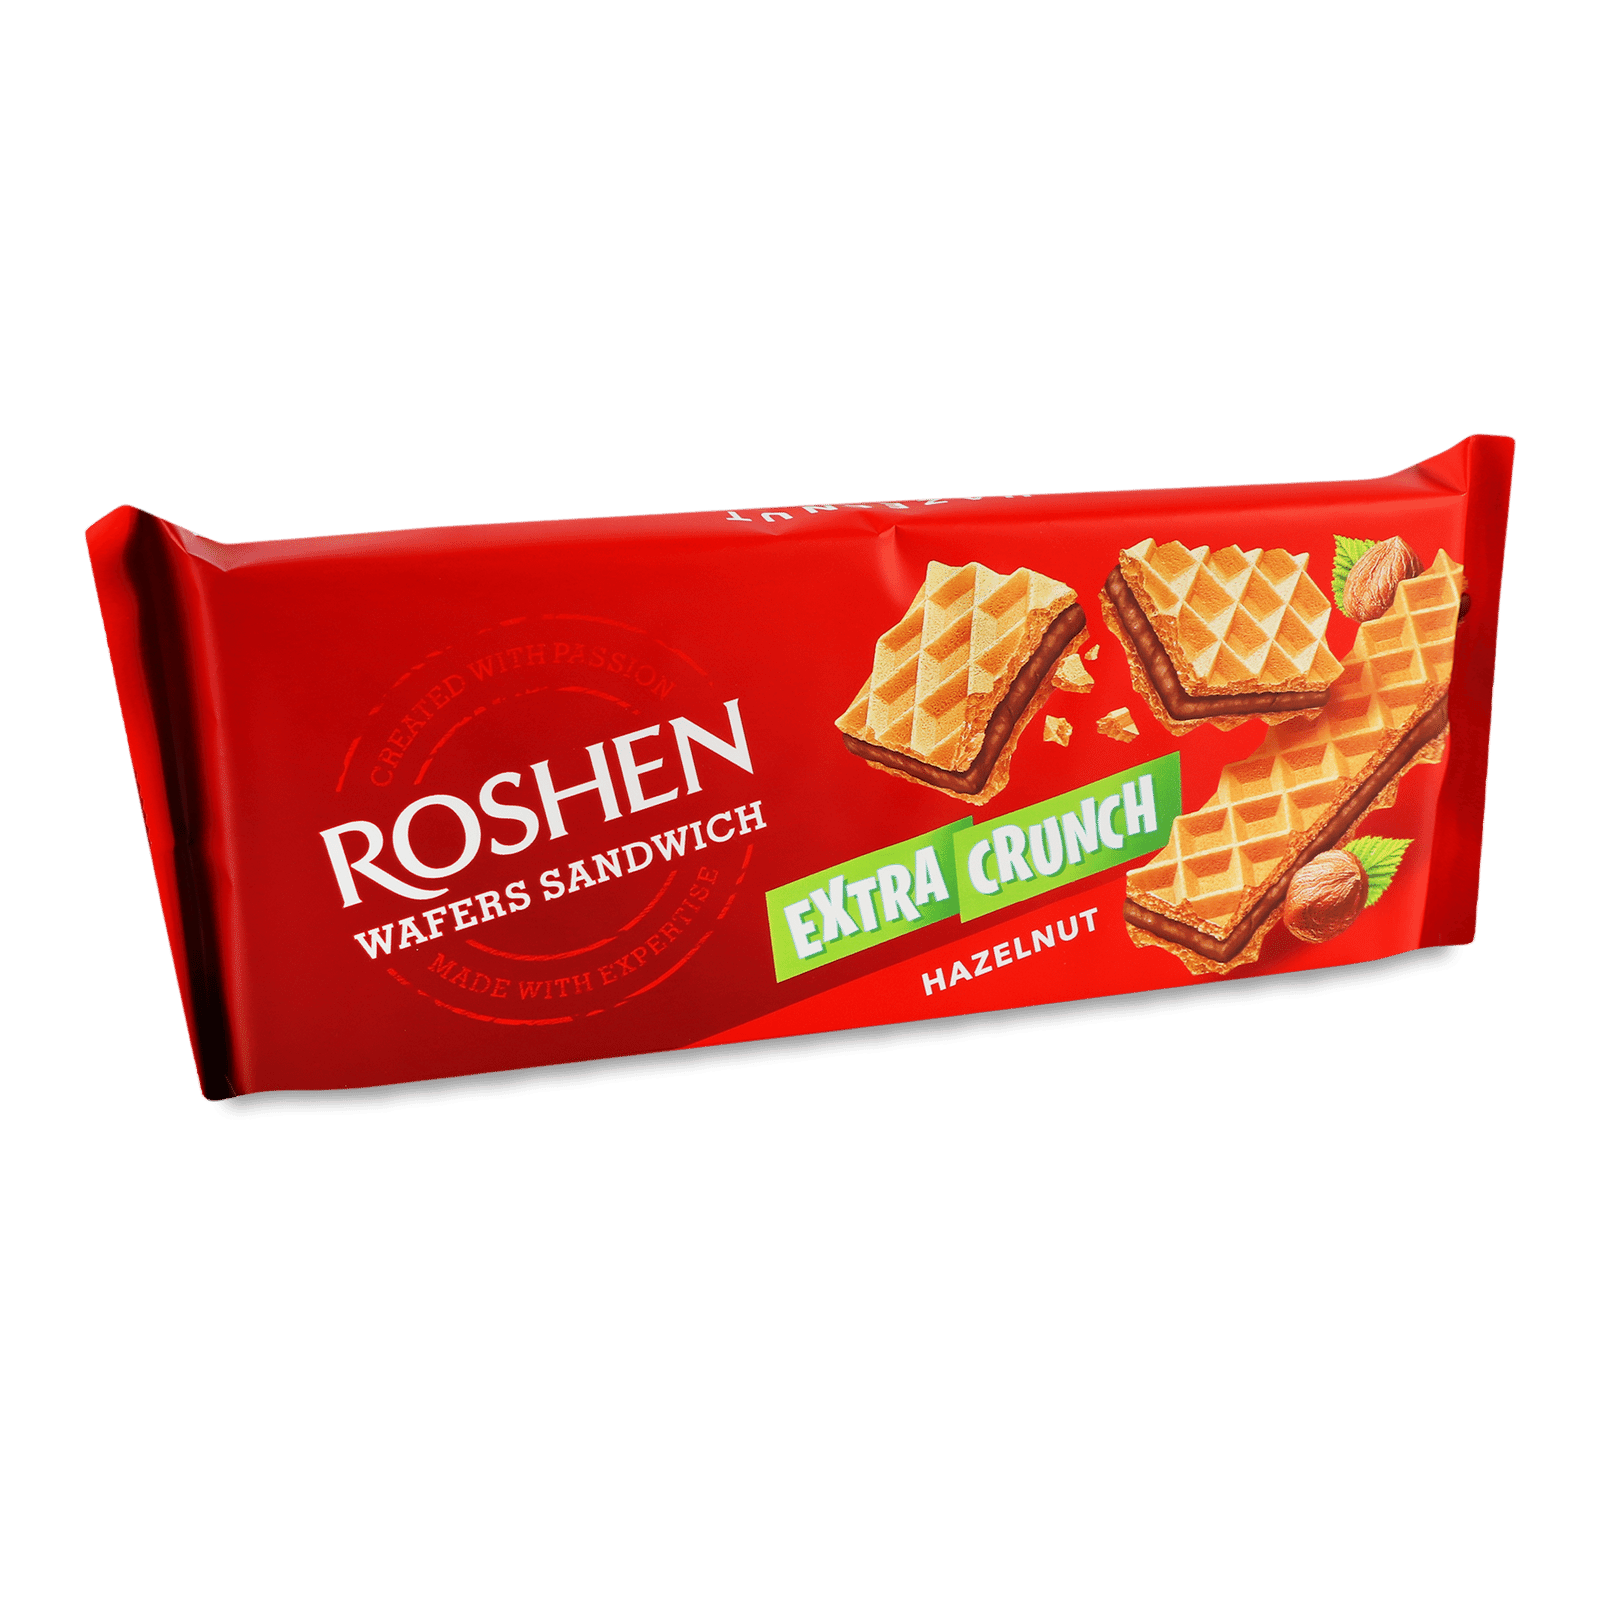 Вафлі Roshen Wafers Sandwich Extra Crunch Hazelnut - 1